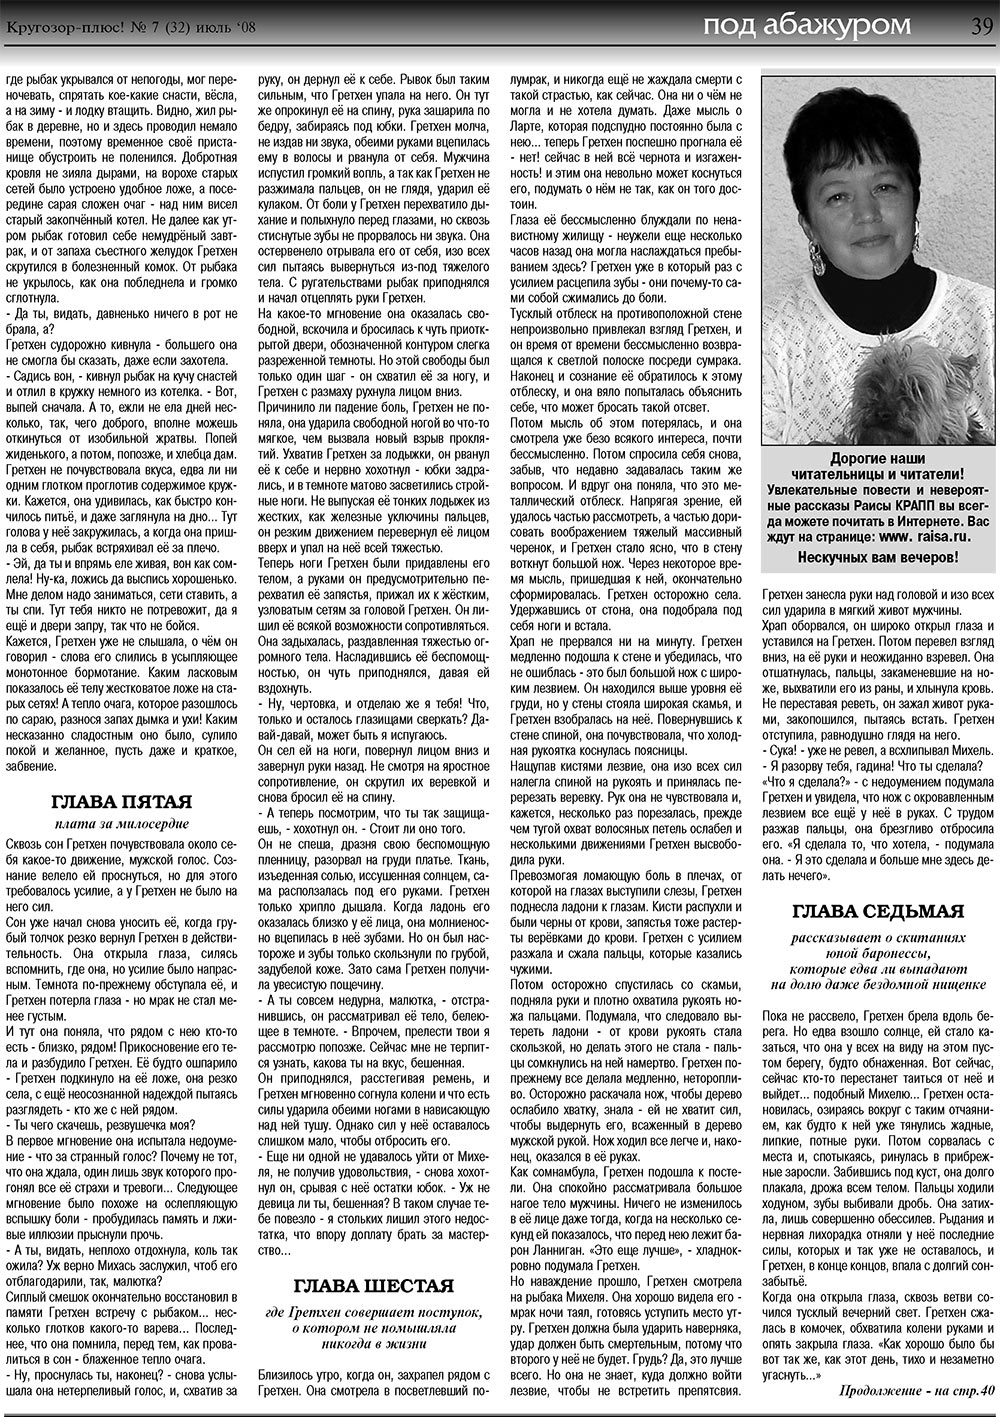 Кругозор плюс!, газета. 2008 №7 стр.39